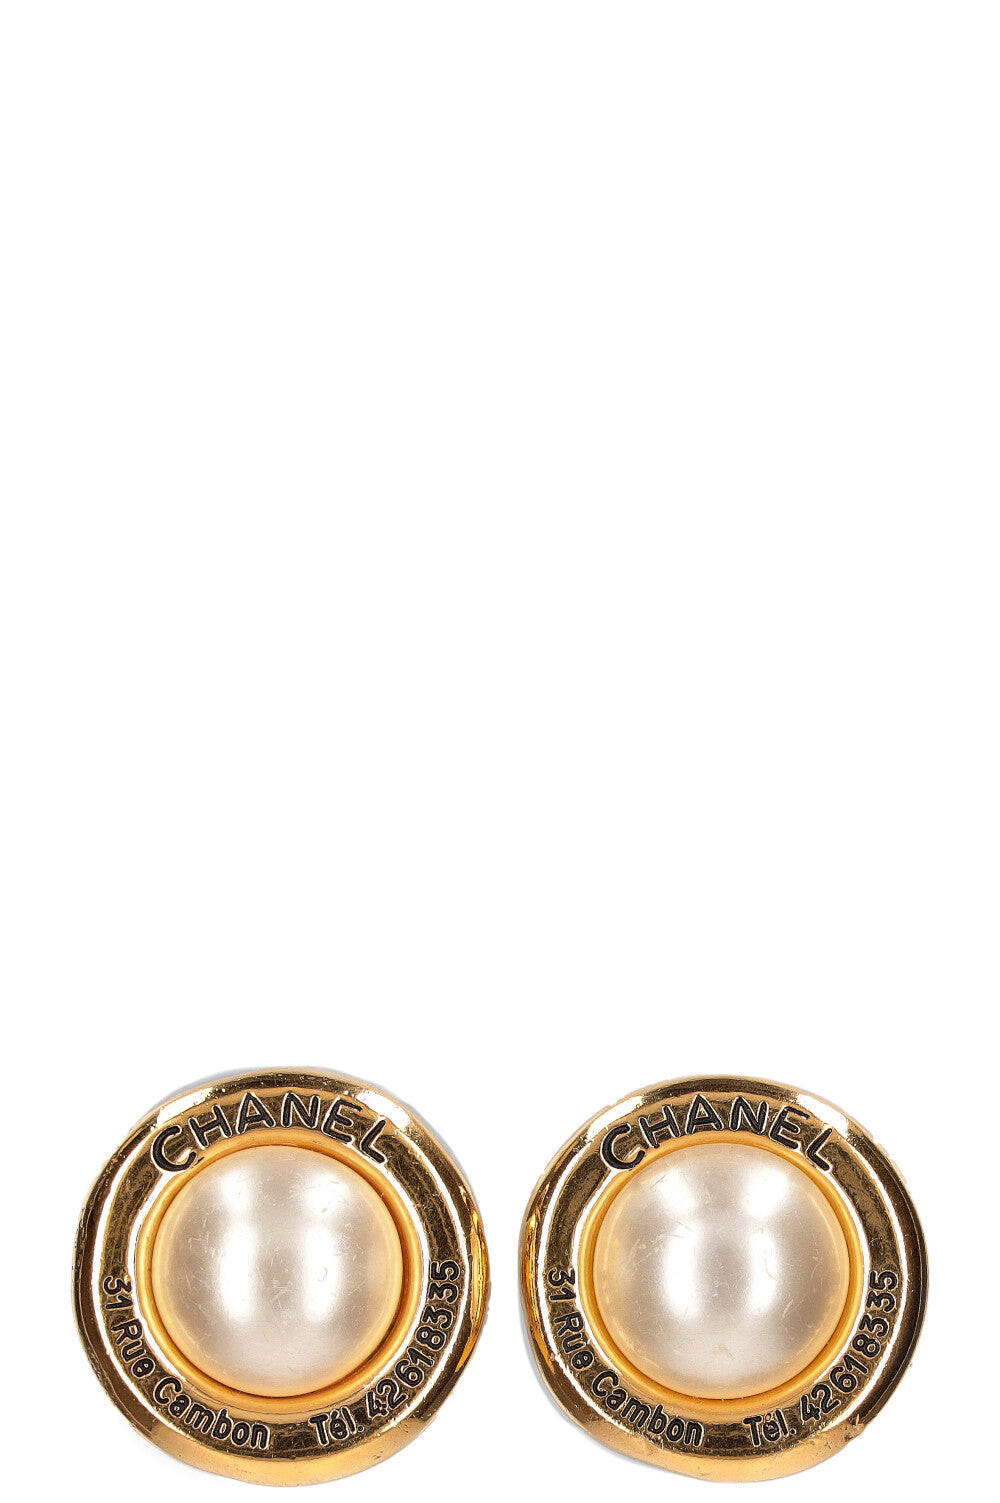 CHANEL Earrings Pearl Gold